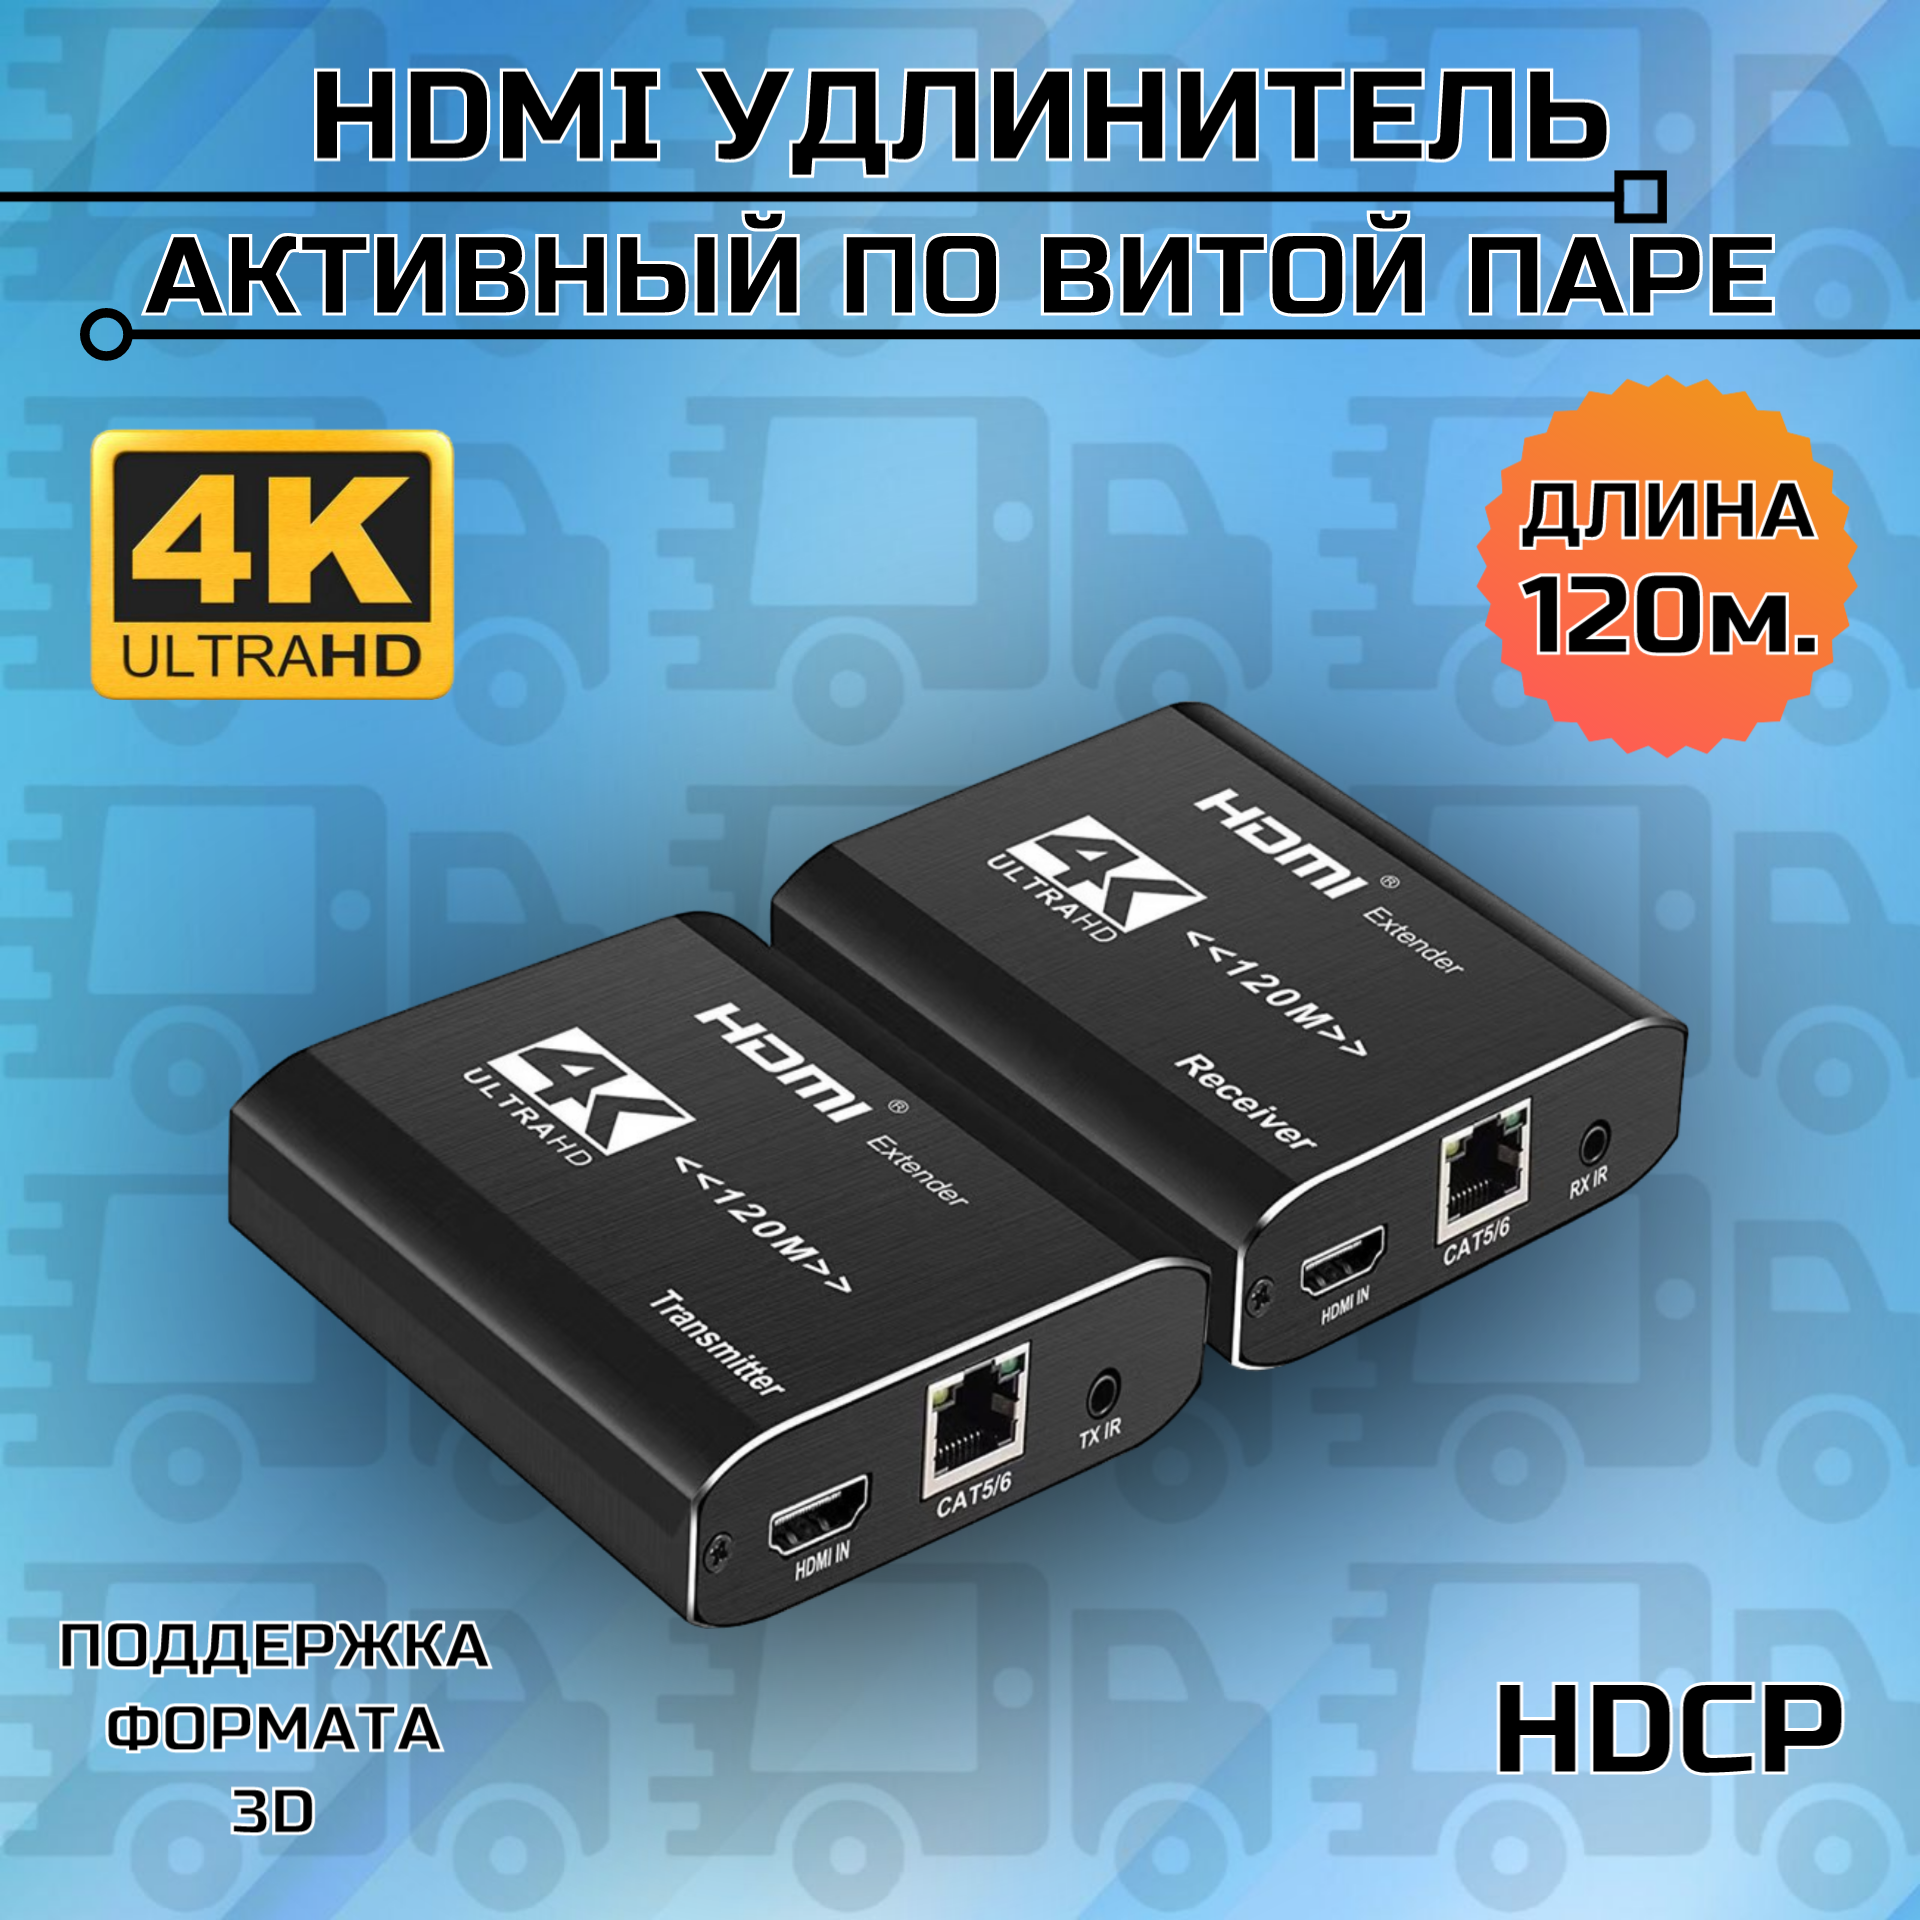 Активный HDMI удлинитель по витой паре до 120м Каскадное подключение до 12 устройств Full HD 1080P Ethernet Utp усилитель сигнала кабель cat5e cat6 c коммутатором хабом